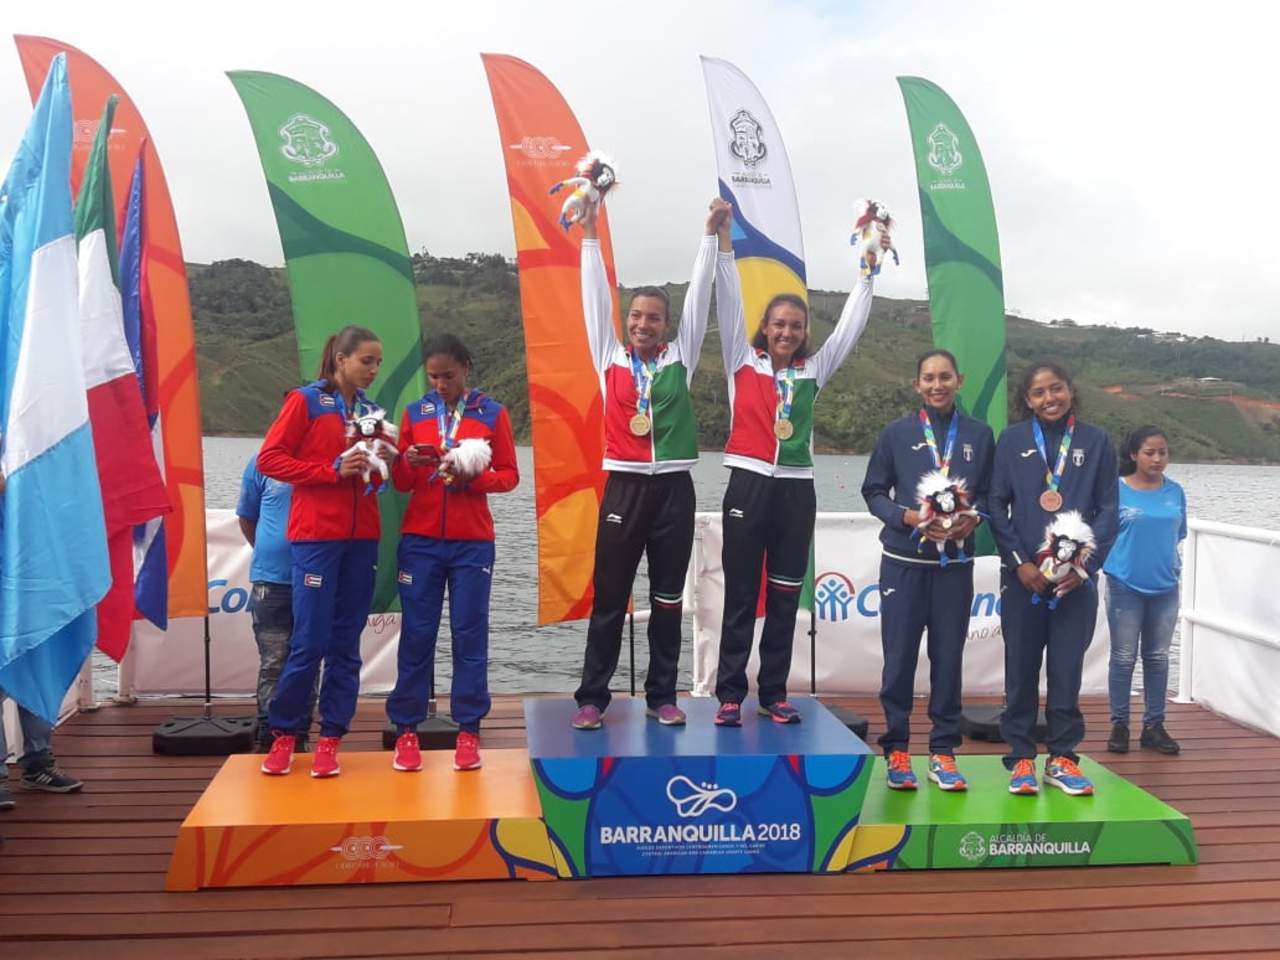 Al concluir la jornada sabatina, México obtuvo tres medallas de oro y una de plata en el remo de los Juegos Centroamericanos y del Caribe de Barranquilla 2018. (ESPECIAL)